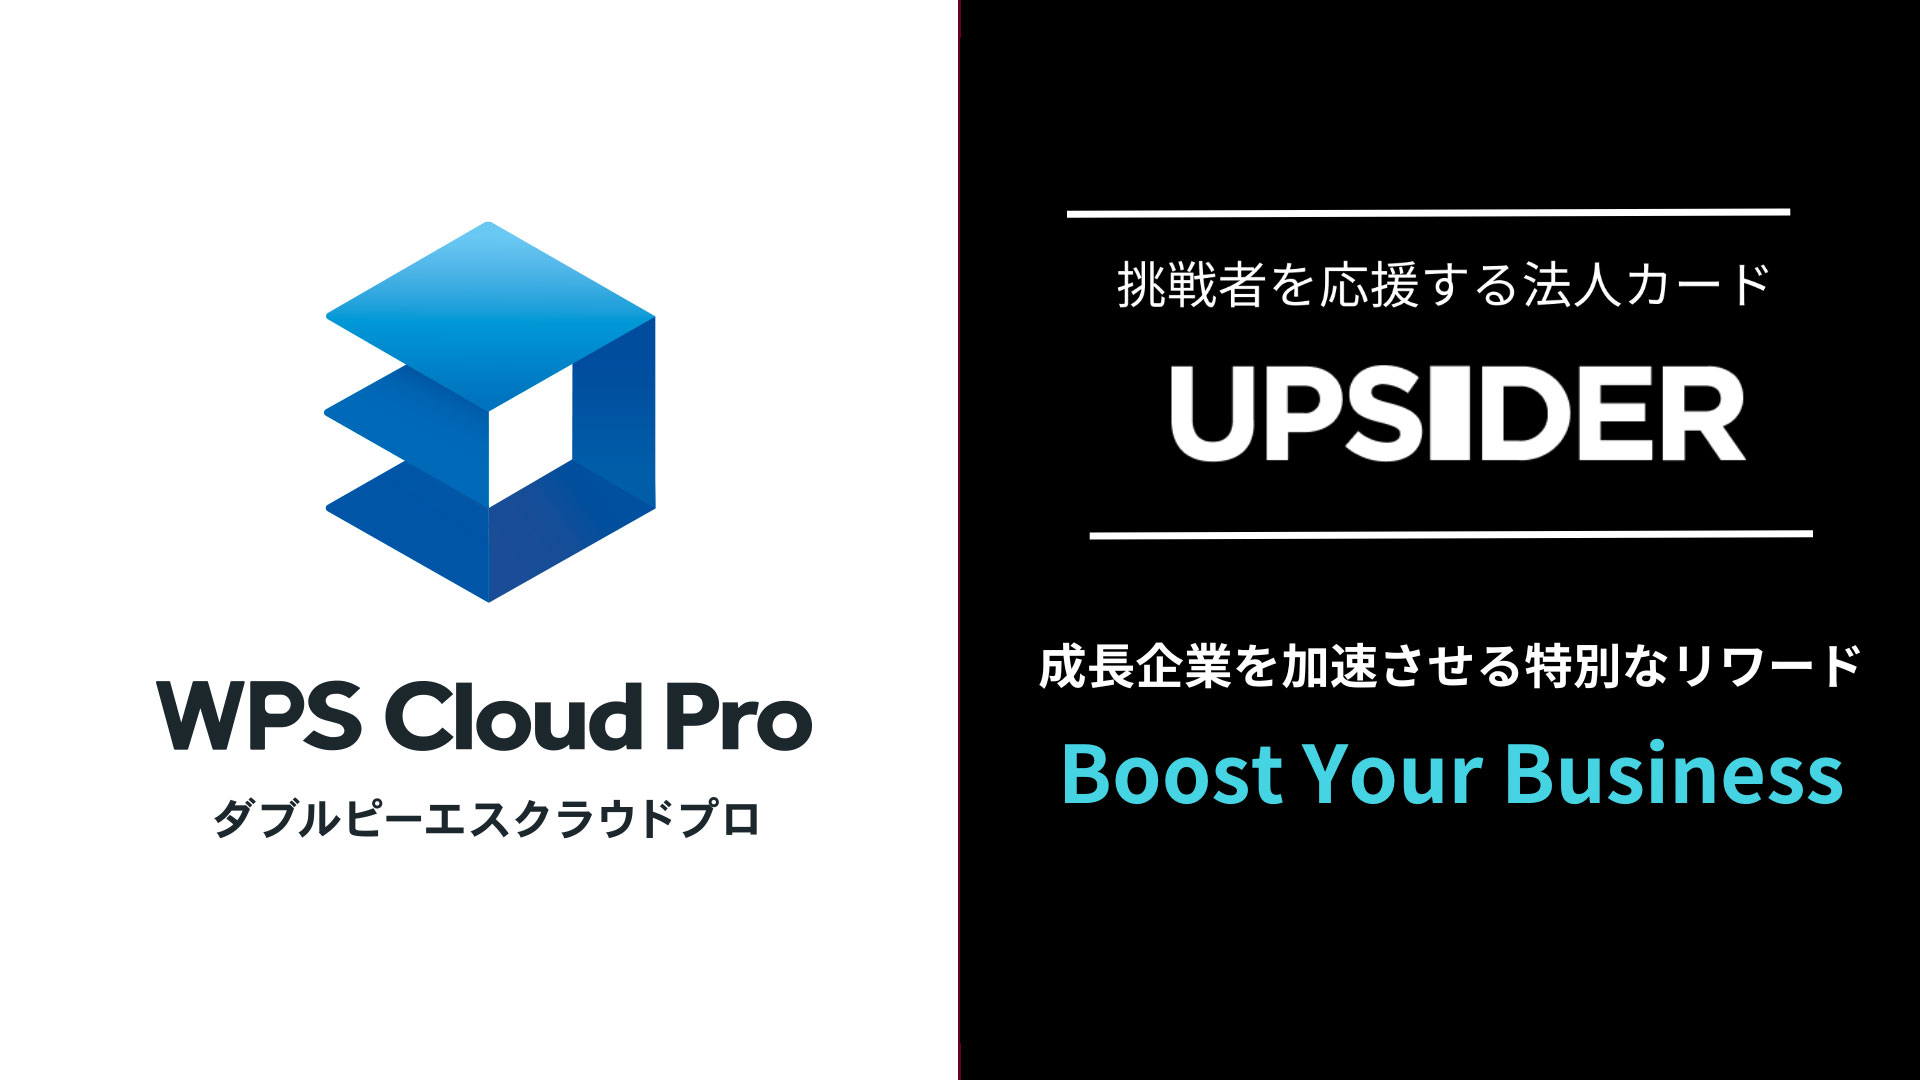 キングソフト 、「WPS Cloud Pro」を法人カード「UPSIDER」の優待プログラム「Boost Your Bu